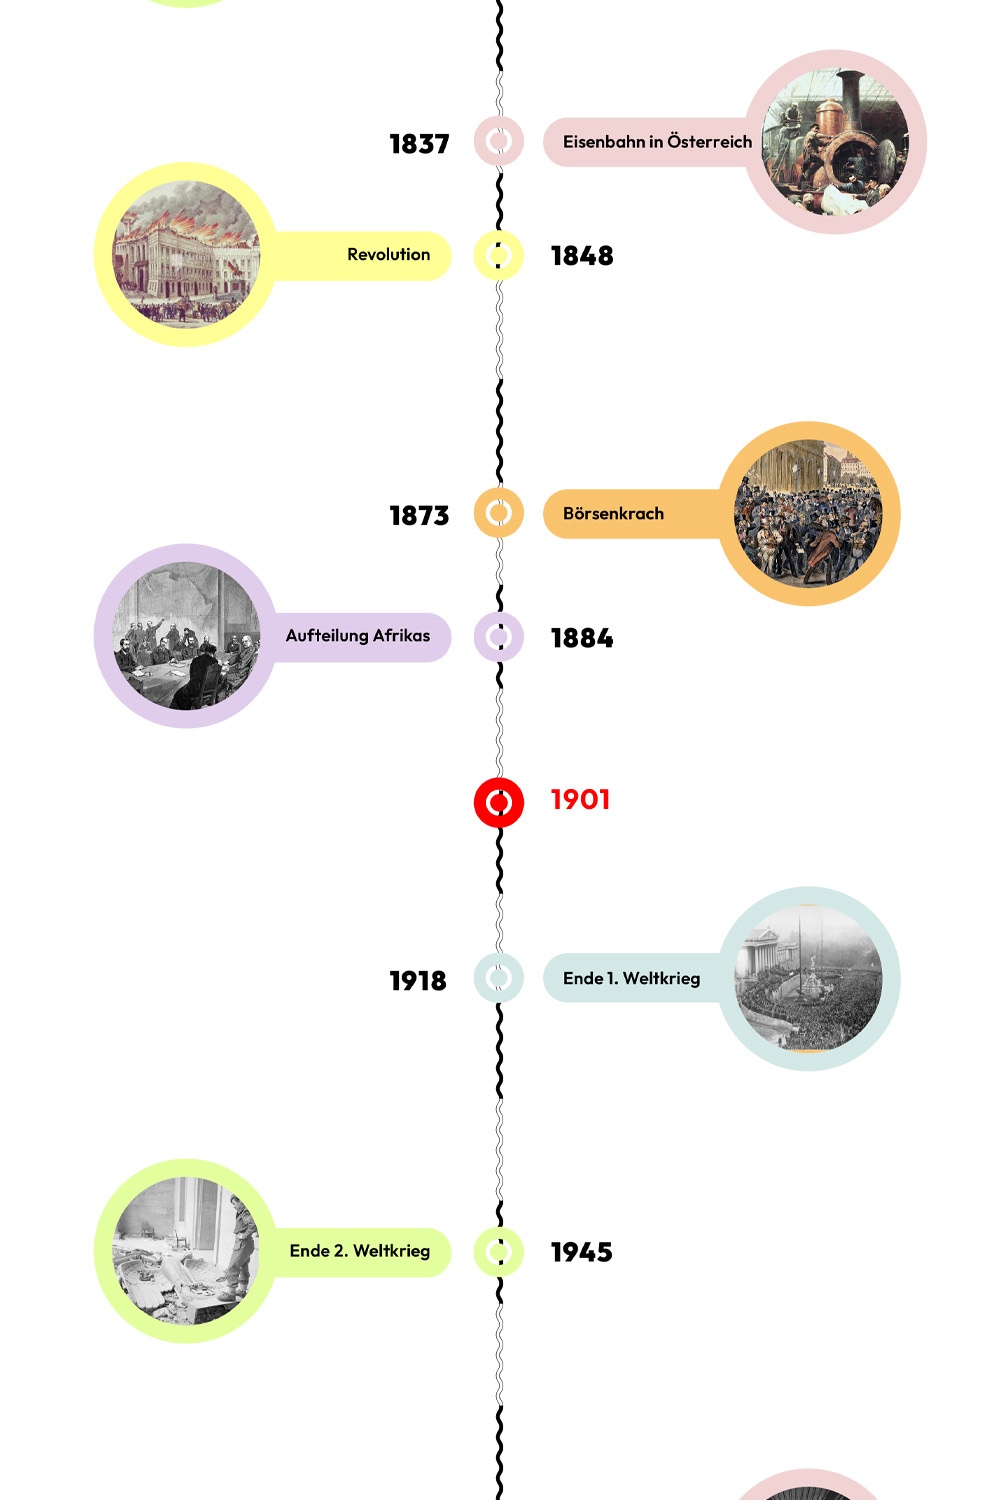 Zeitstrahl mit historischen Ereignissen - 1901 ist hervorgehoben. © wasbishergeschah.at